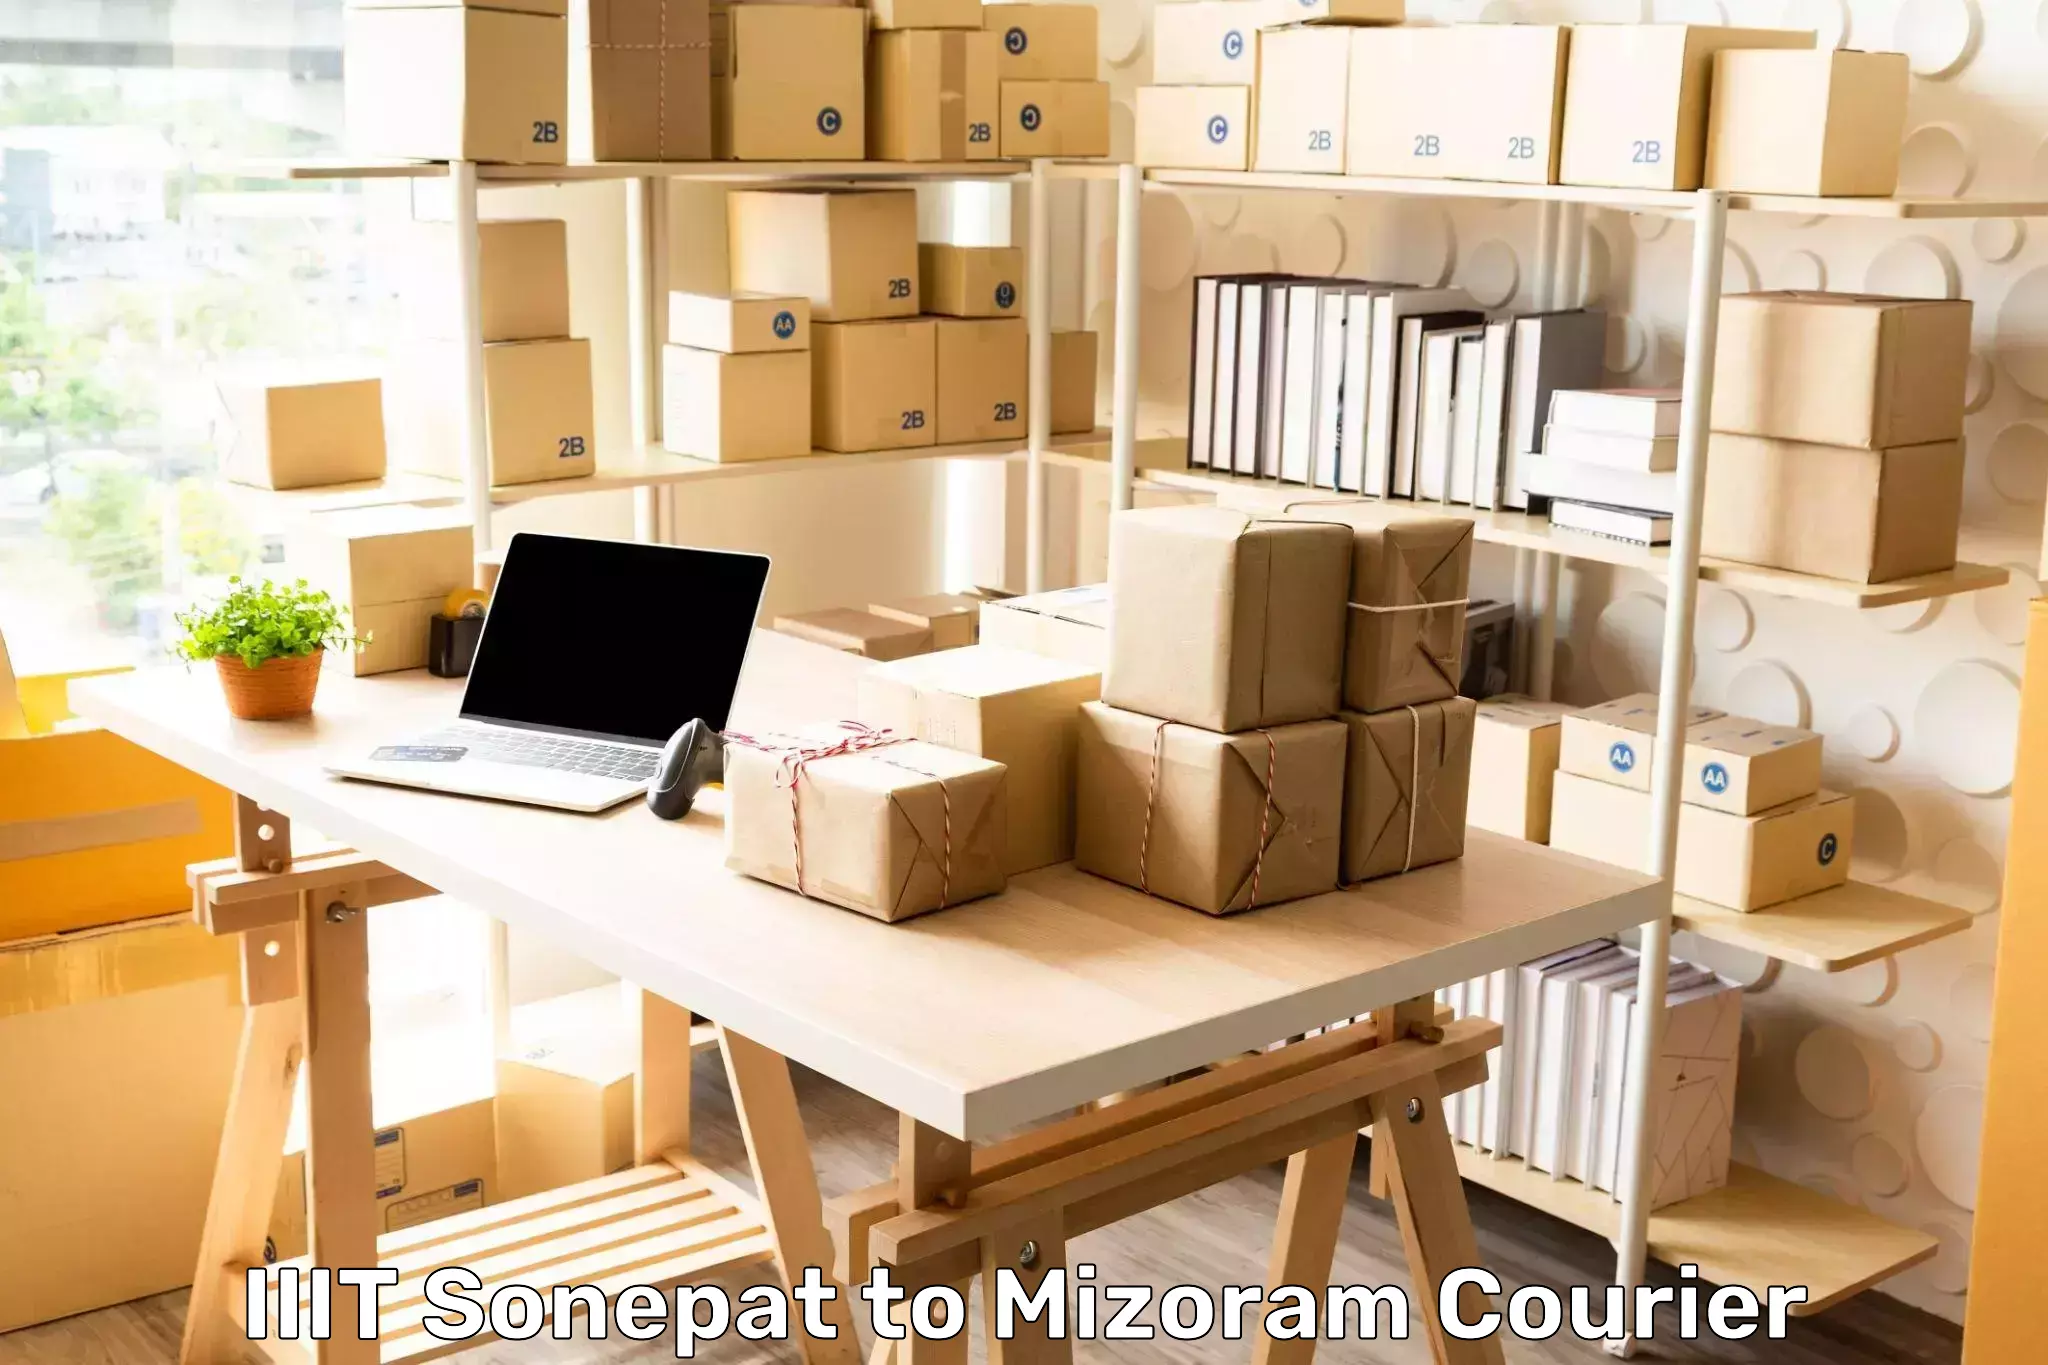 Full-service courier options in IIIT Sonepat to Mizoram